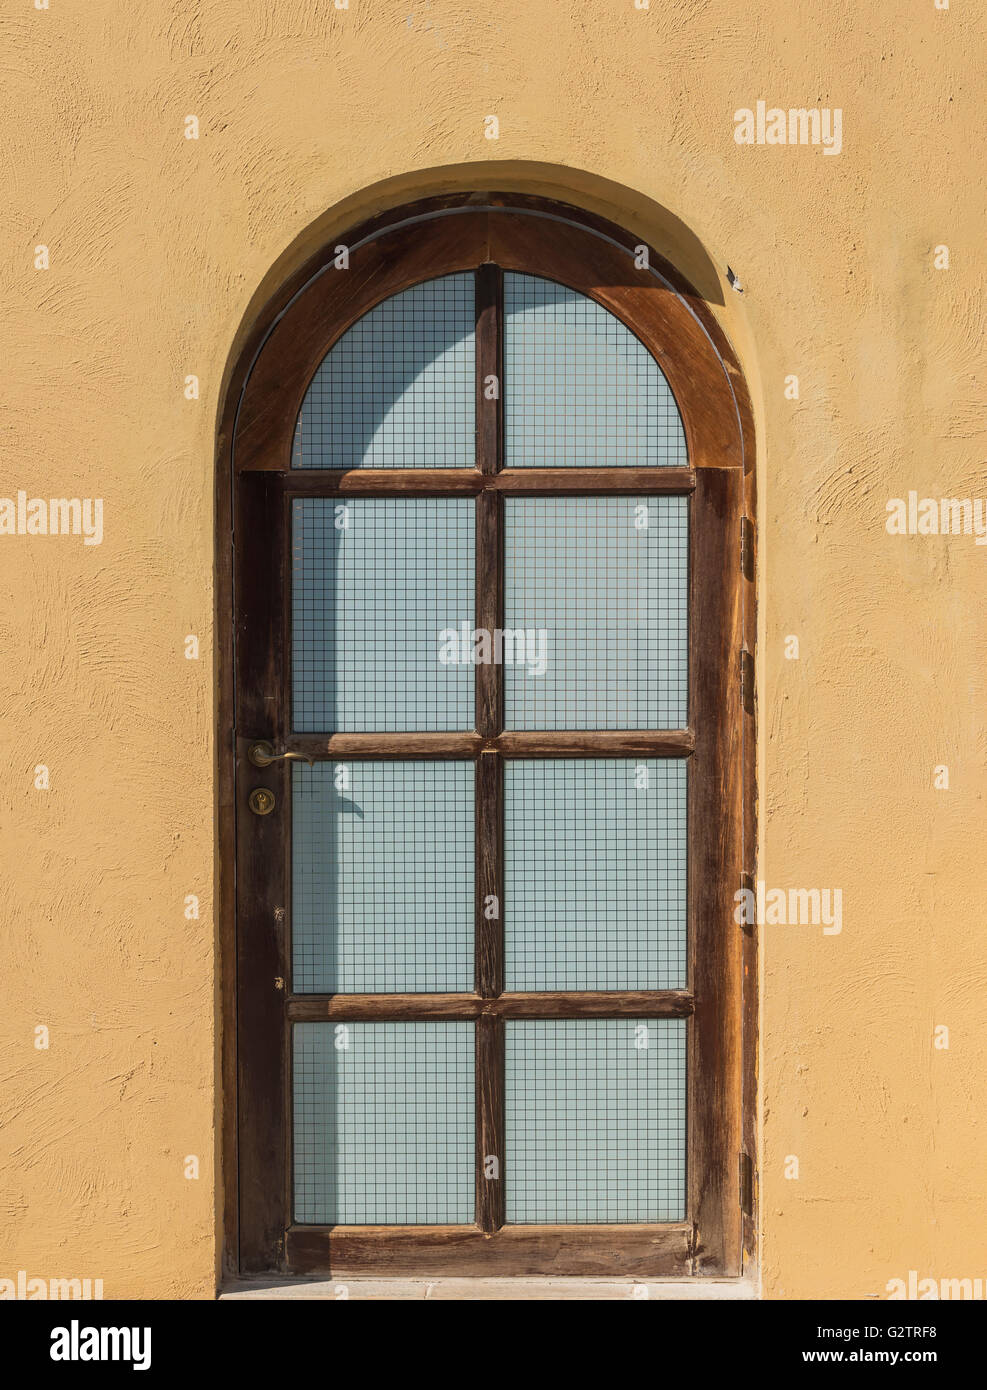 Holz Fenster mit grob verputzte Wand gewölbt Stockfotografie - Alamy